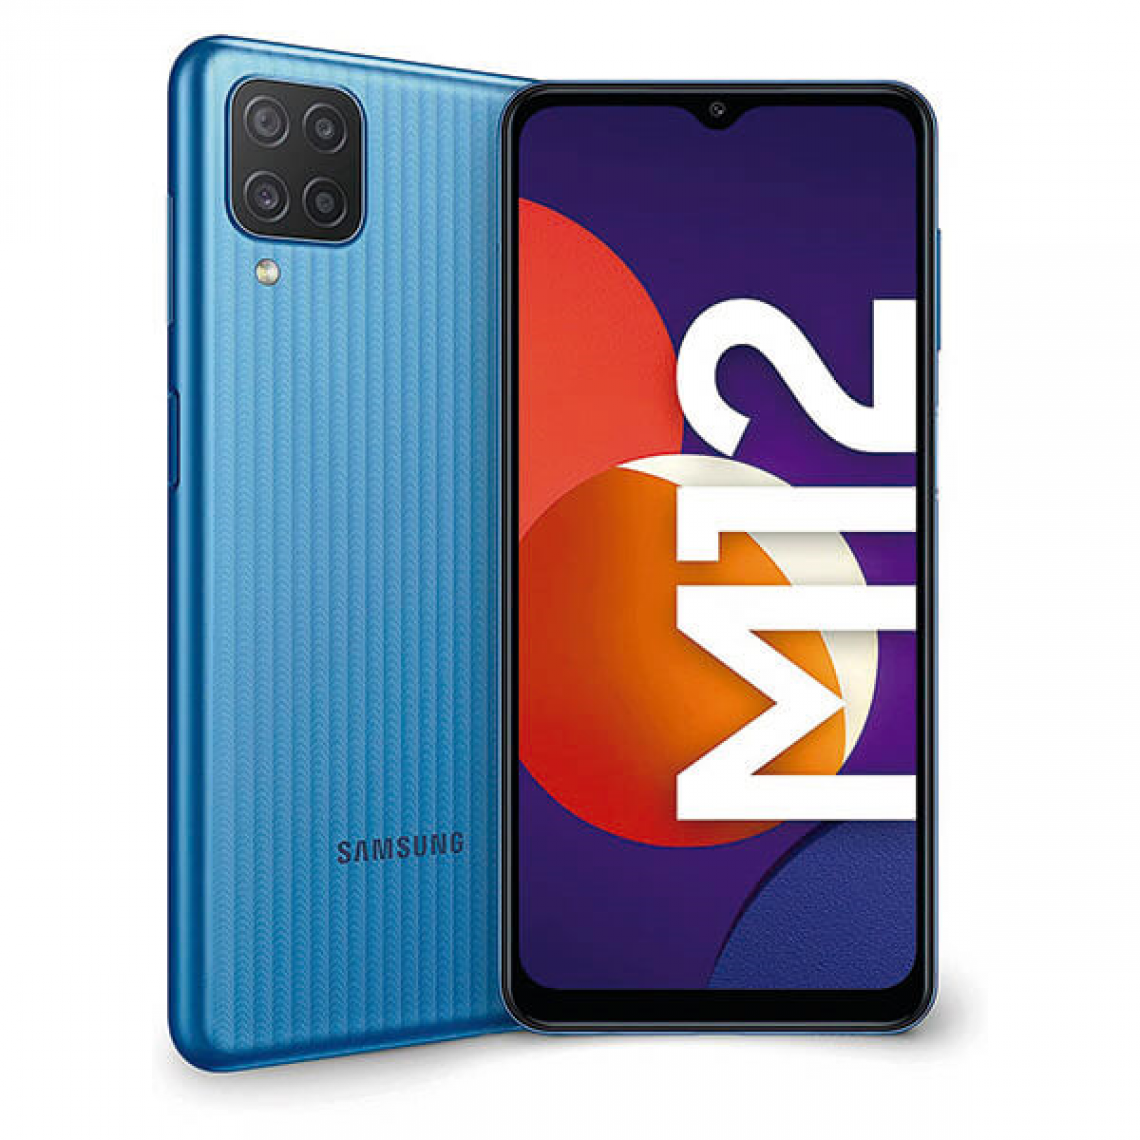 Samsung - Samsung M12 4Go/64Go Bleu Dual Sim SM-M127F - Smartphone Android